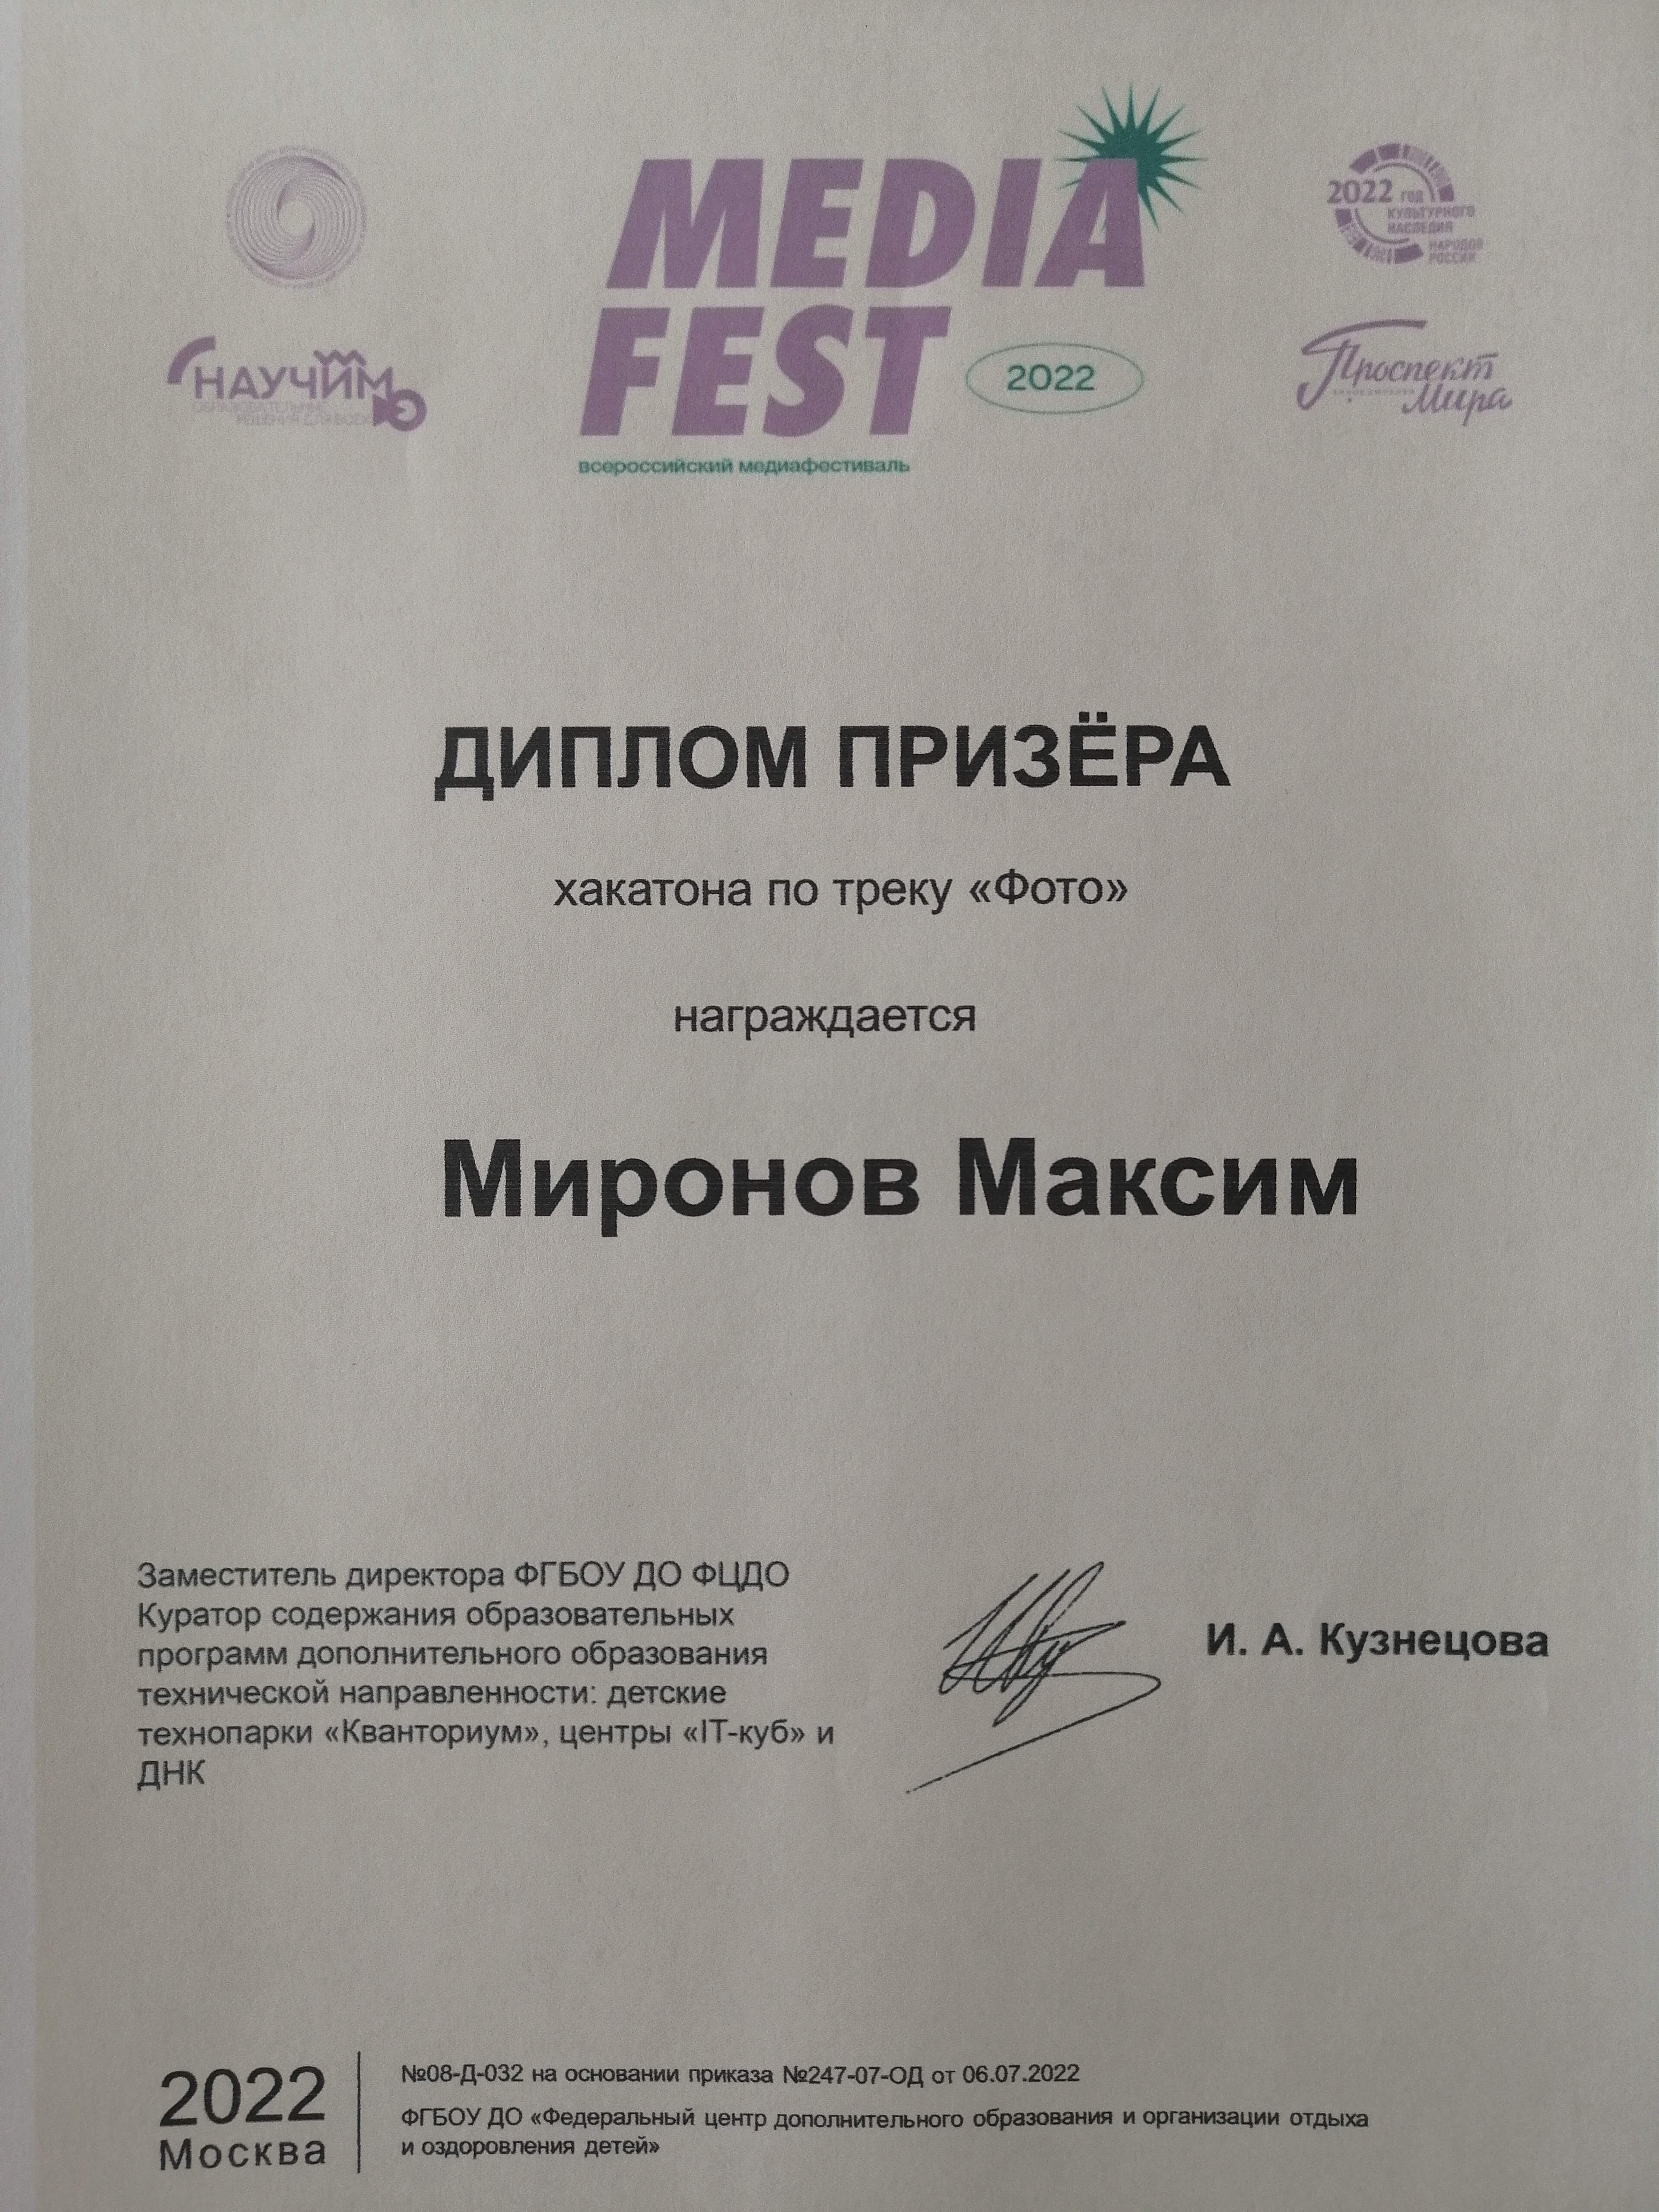 Всероссийский фестиваль &amp;quot;MEDIA FEST 2022&amp;quot;.